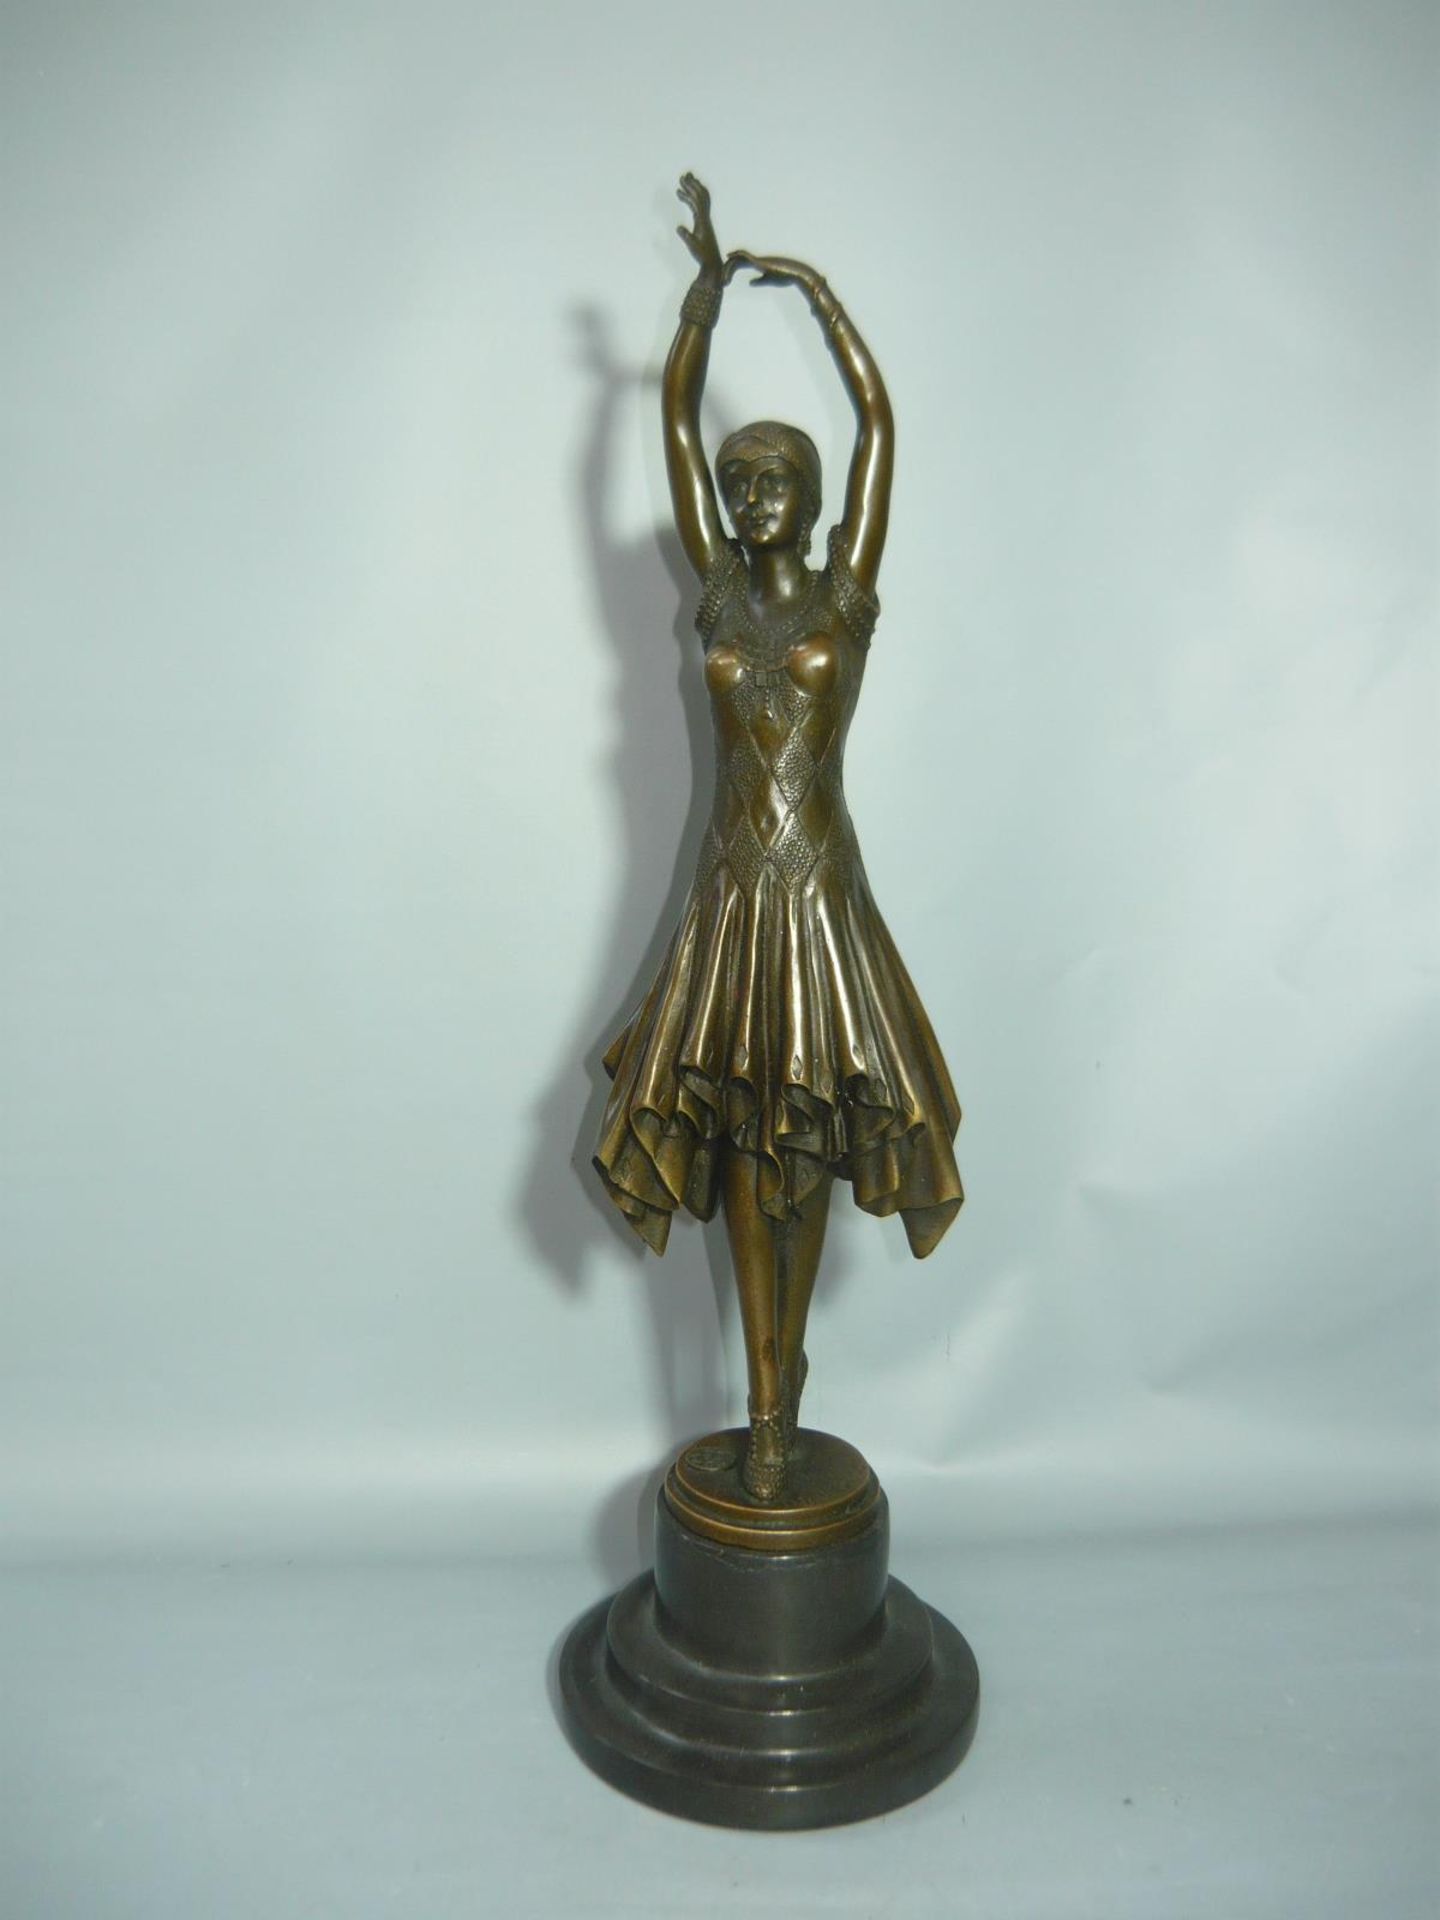 Demetre Chiparus (nach). Tänzerin. Bronze auf Steinsockel. H. 45cm. //English: Demetre Chiparus (